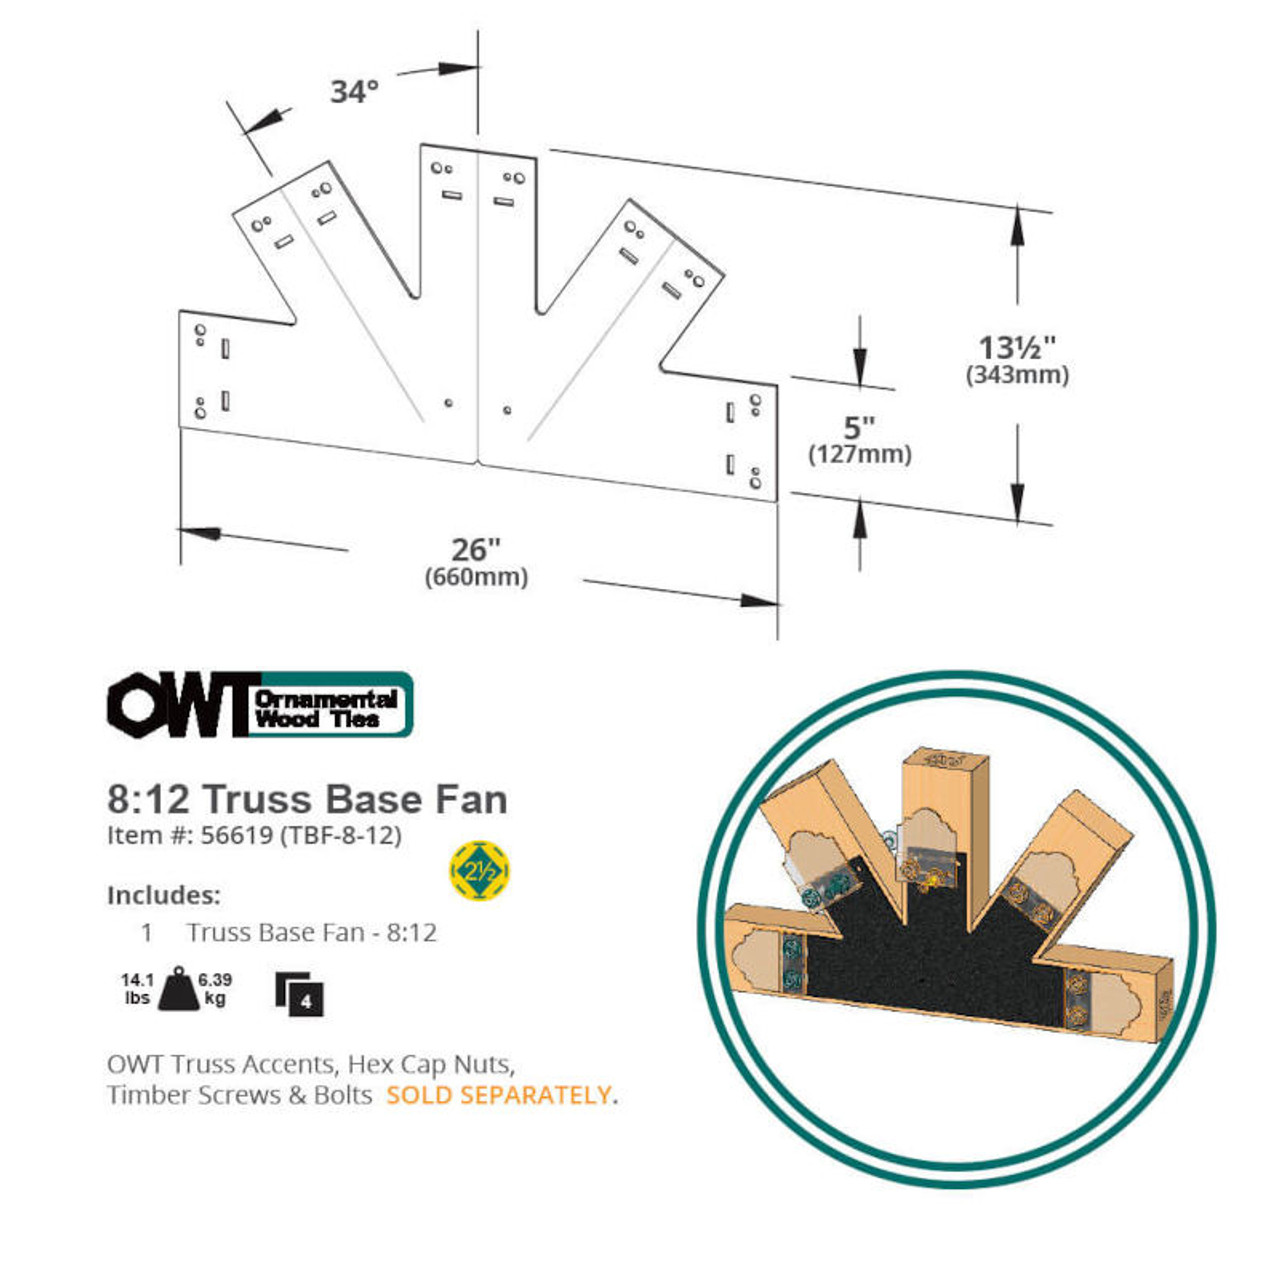 8:12 OWT Truss Base Fan Plate - Dimension Drawing